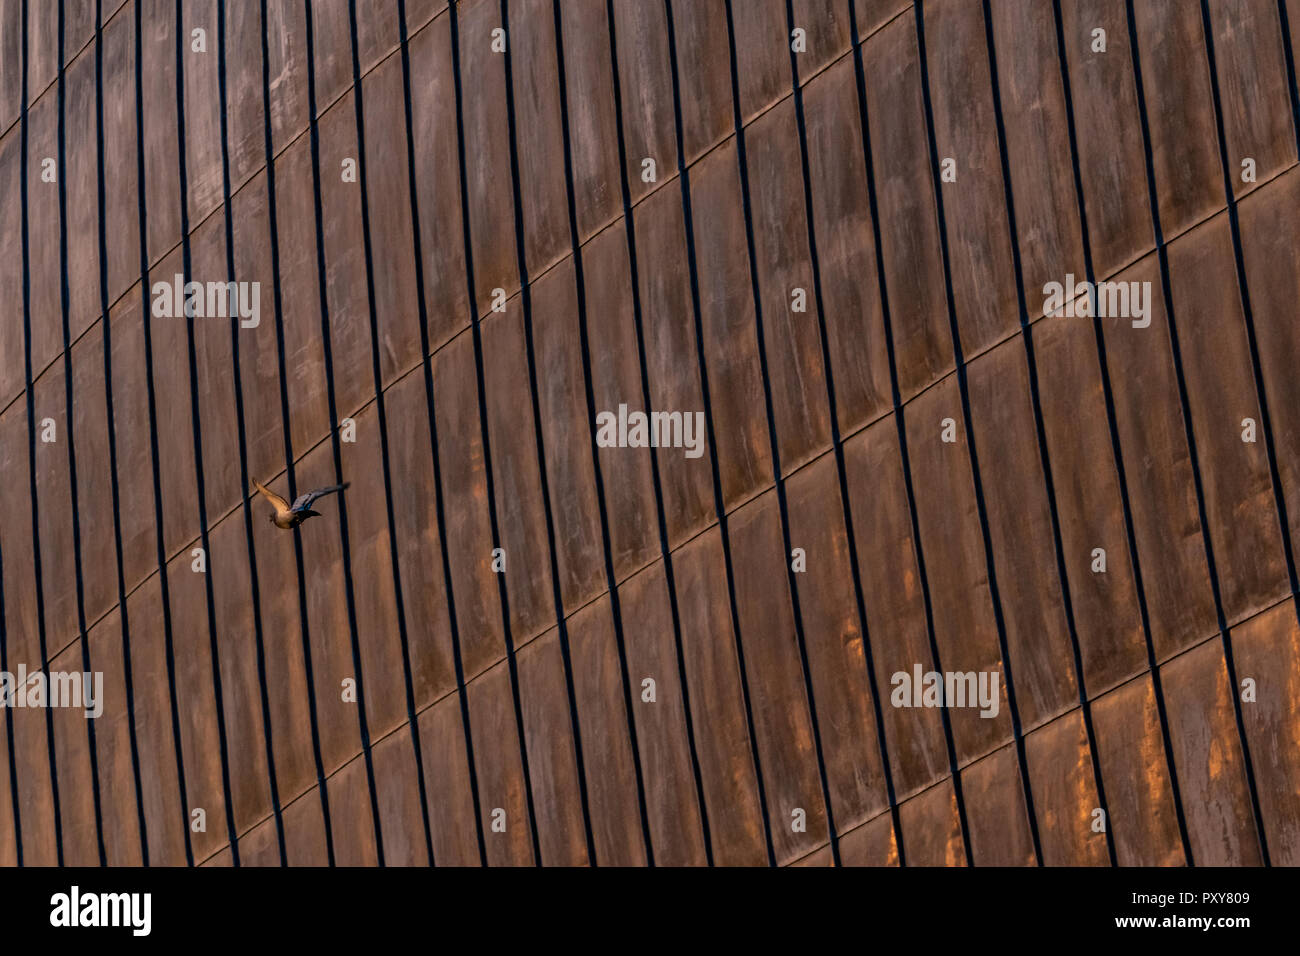 Detalles estructurales de acero oxidado de hojas, utilizado para la impermeabilización externa en la superficie de diseño de la arquitectura orgánica. Superficie con trazas de zinc. Foto de stock